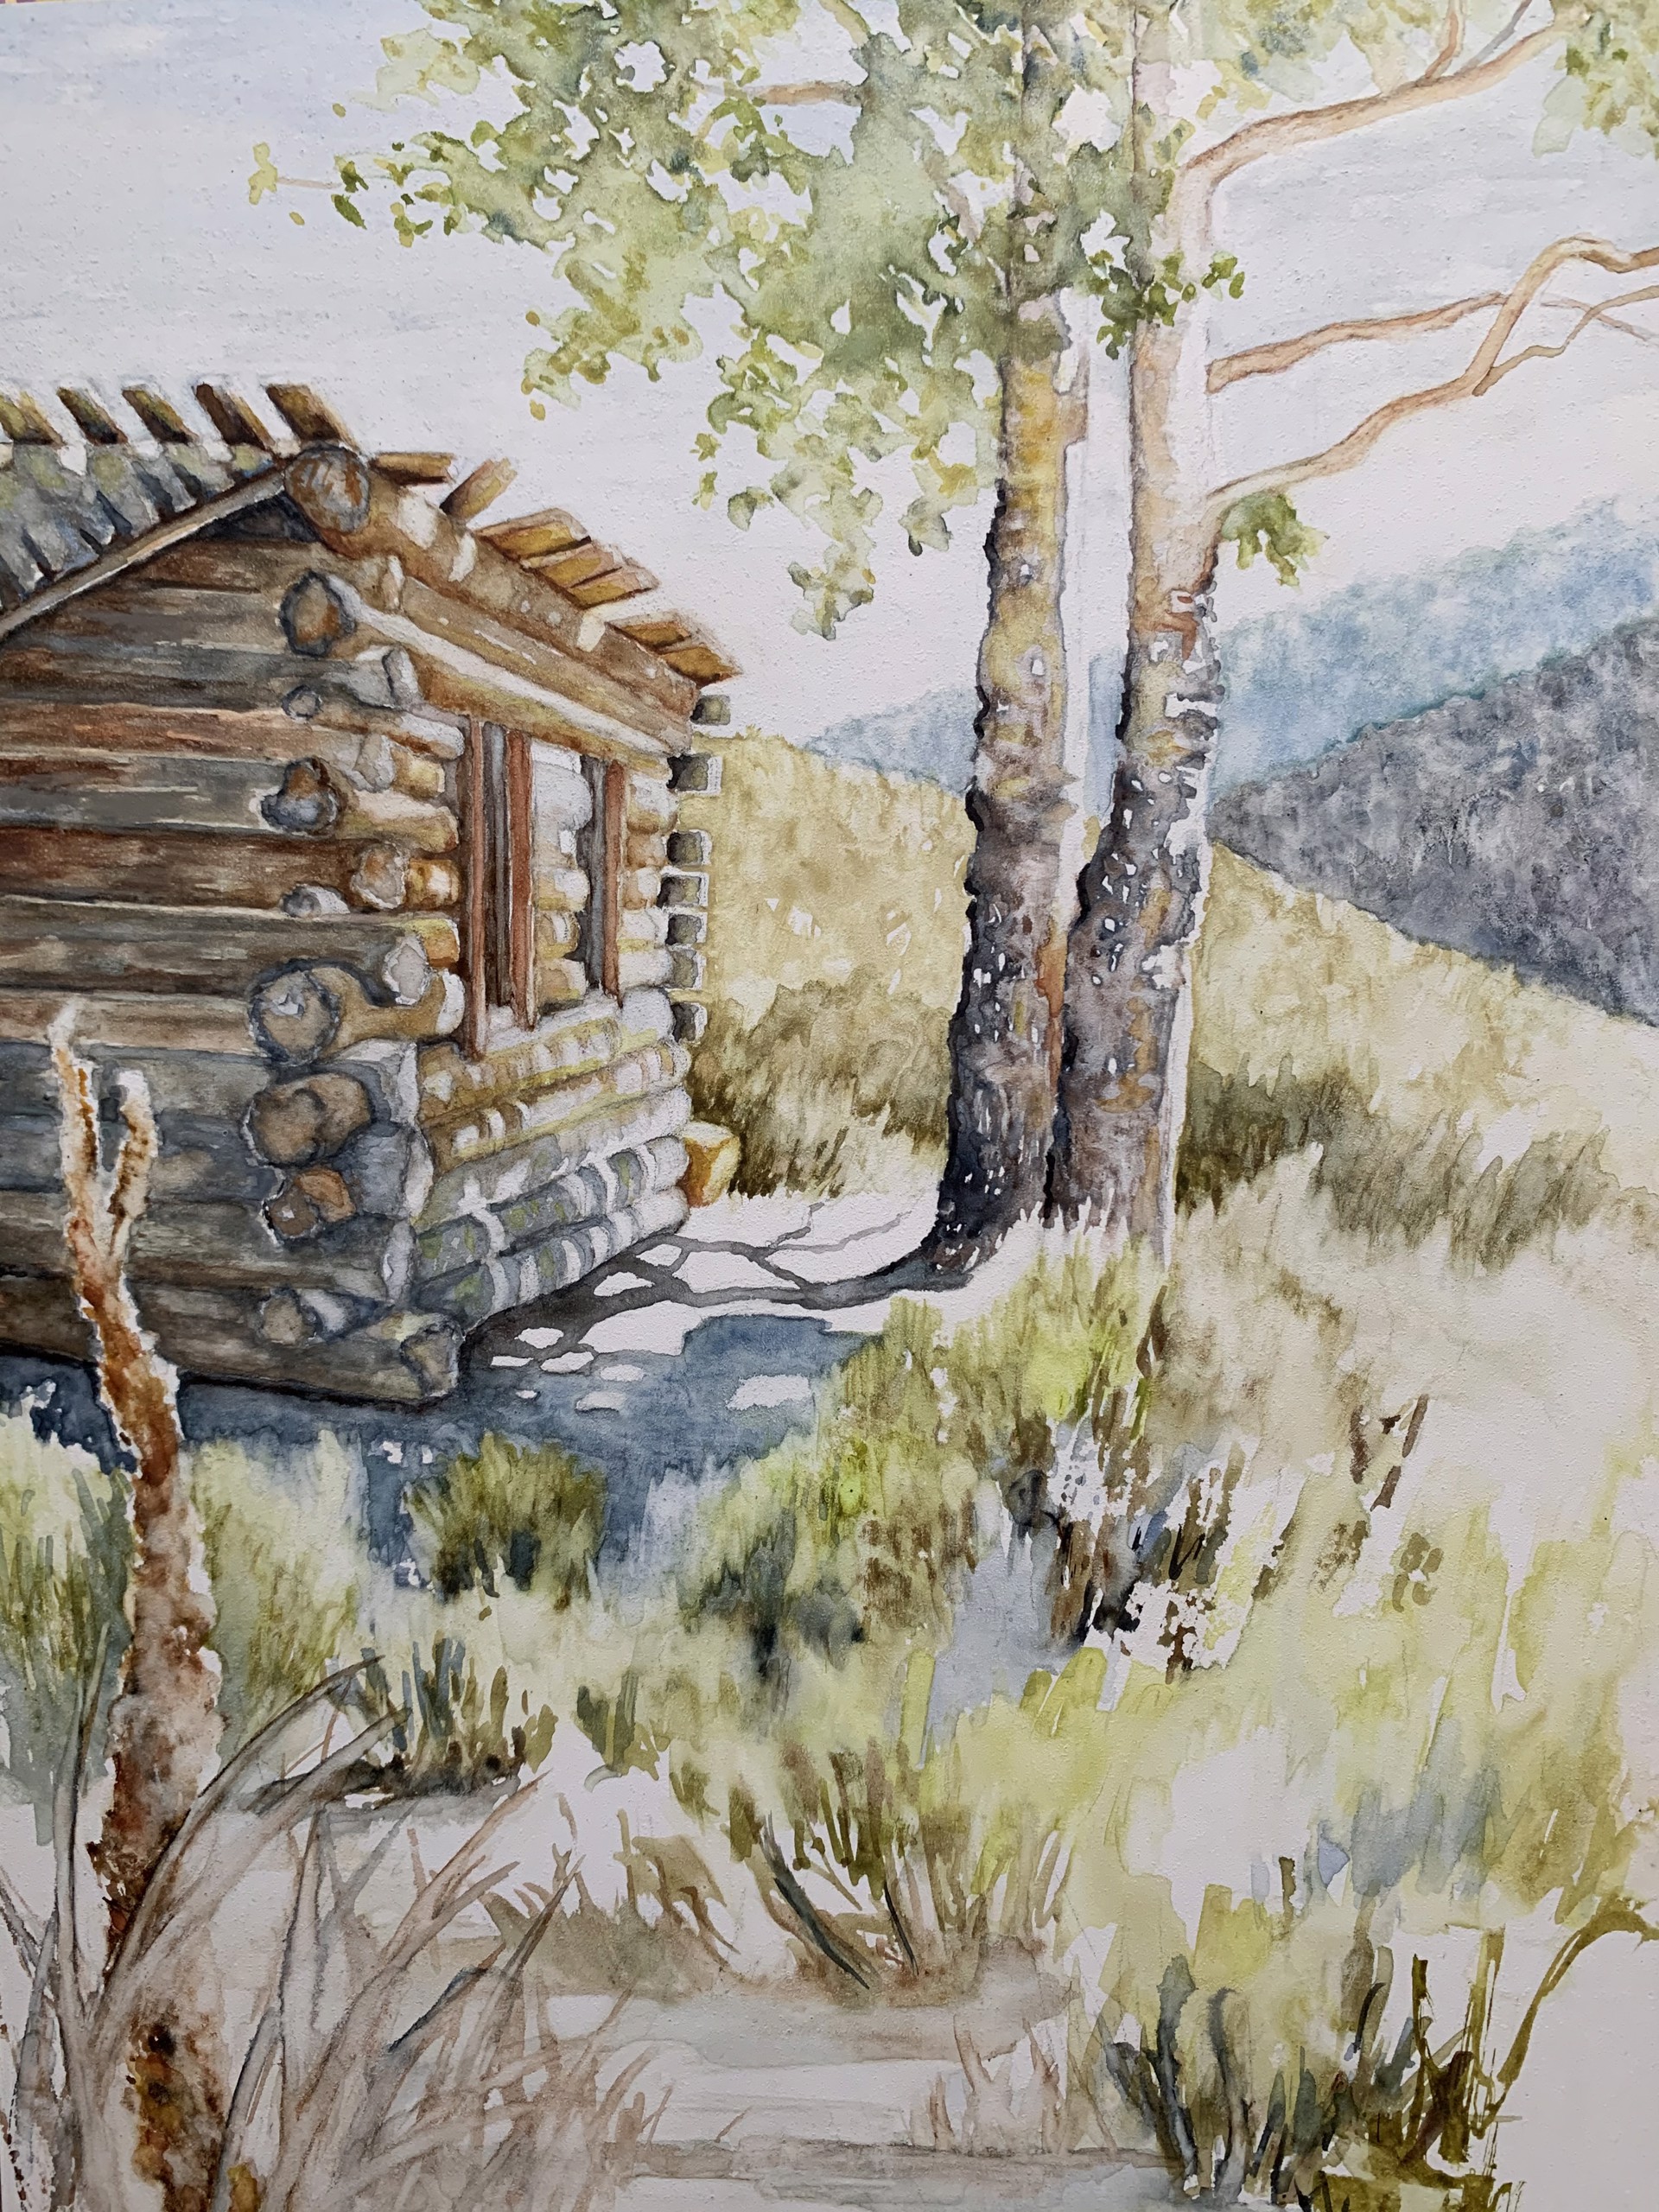 Old Miner's Cabin by Jill Webber